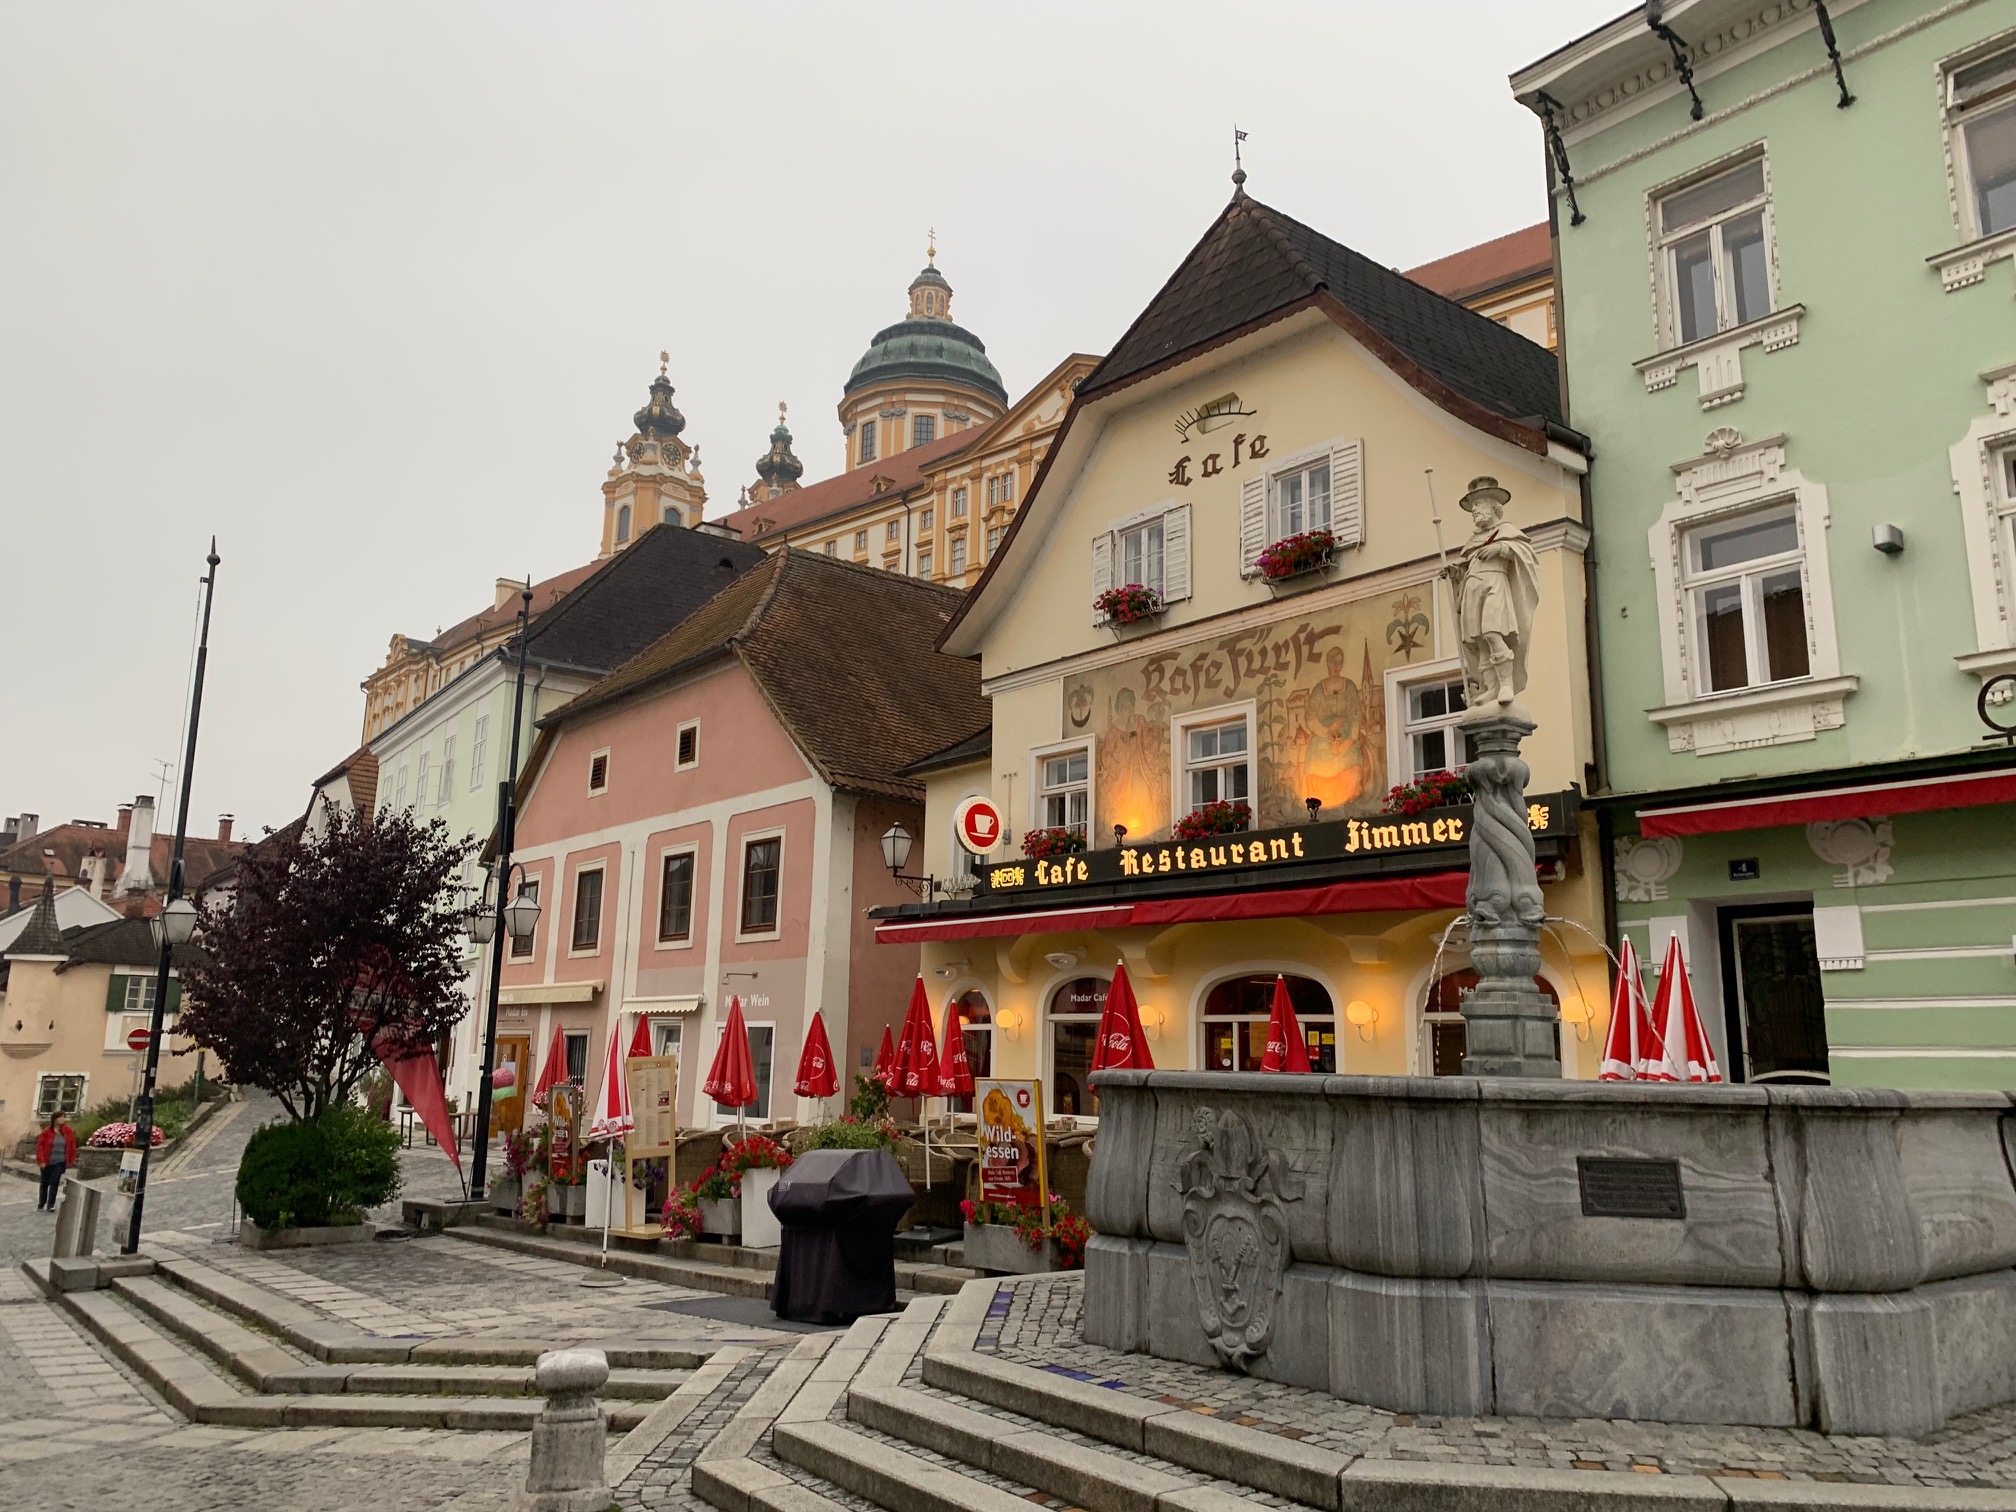 Уикенд в Австрии: чем заняться в долине Вахау Австрия,история,мир,путешествие,самостоятельные путешествия,турист,туристу на заметку